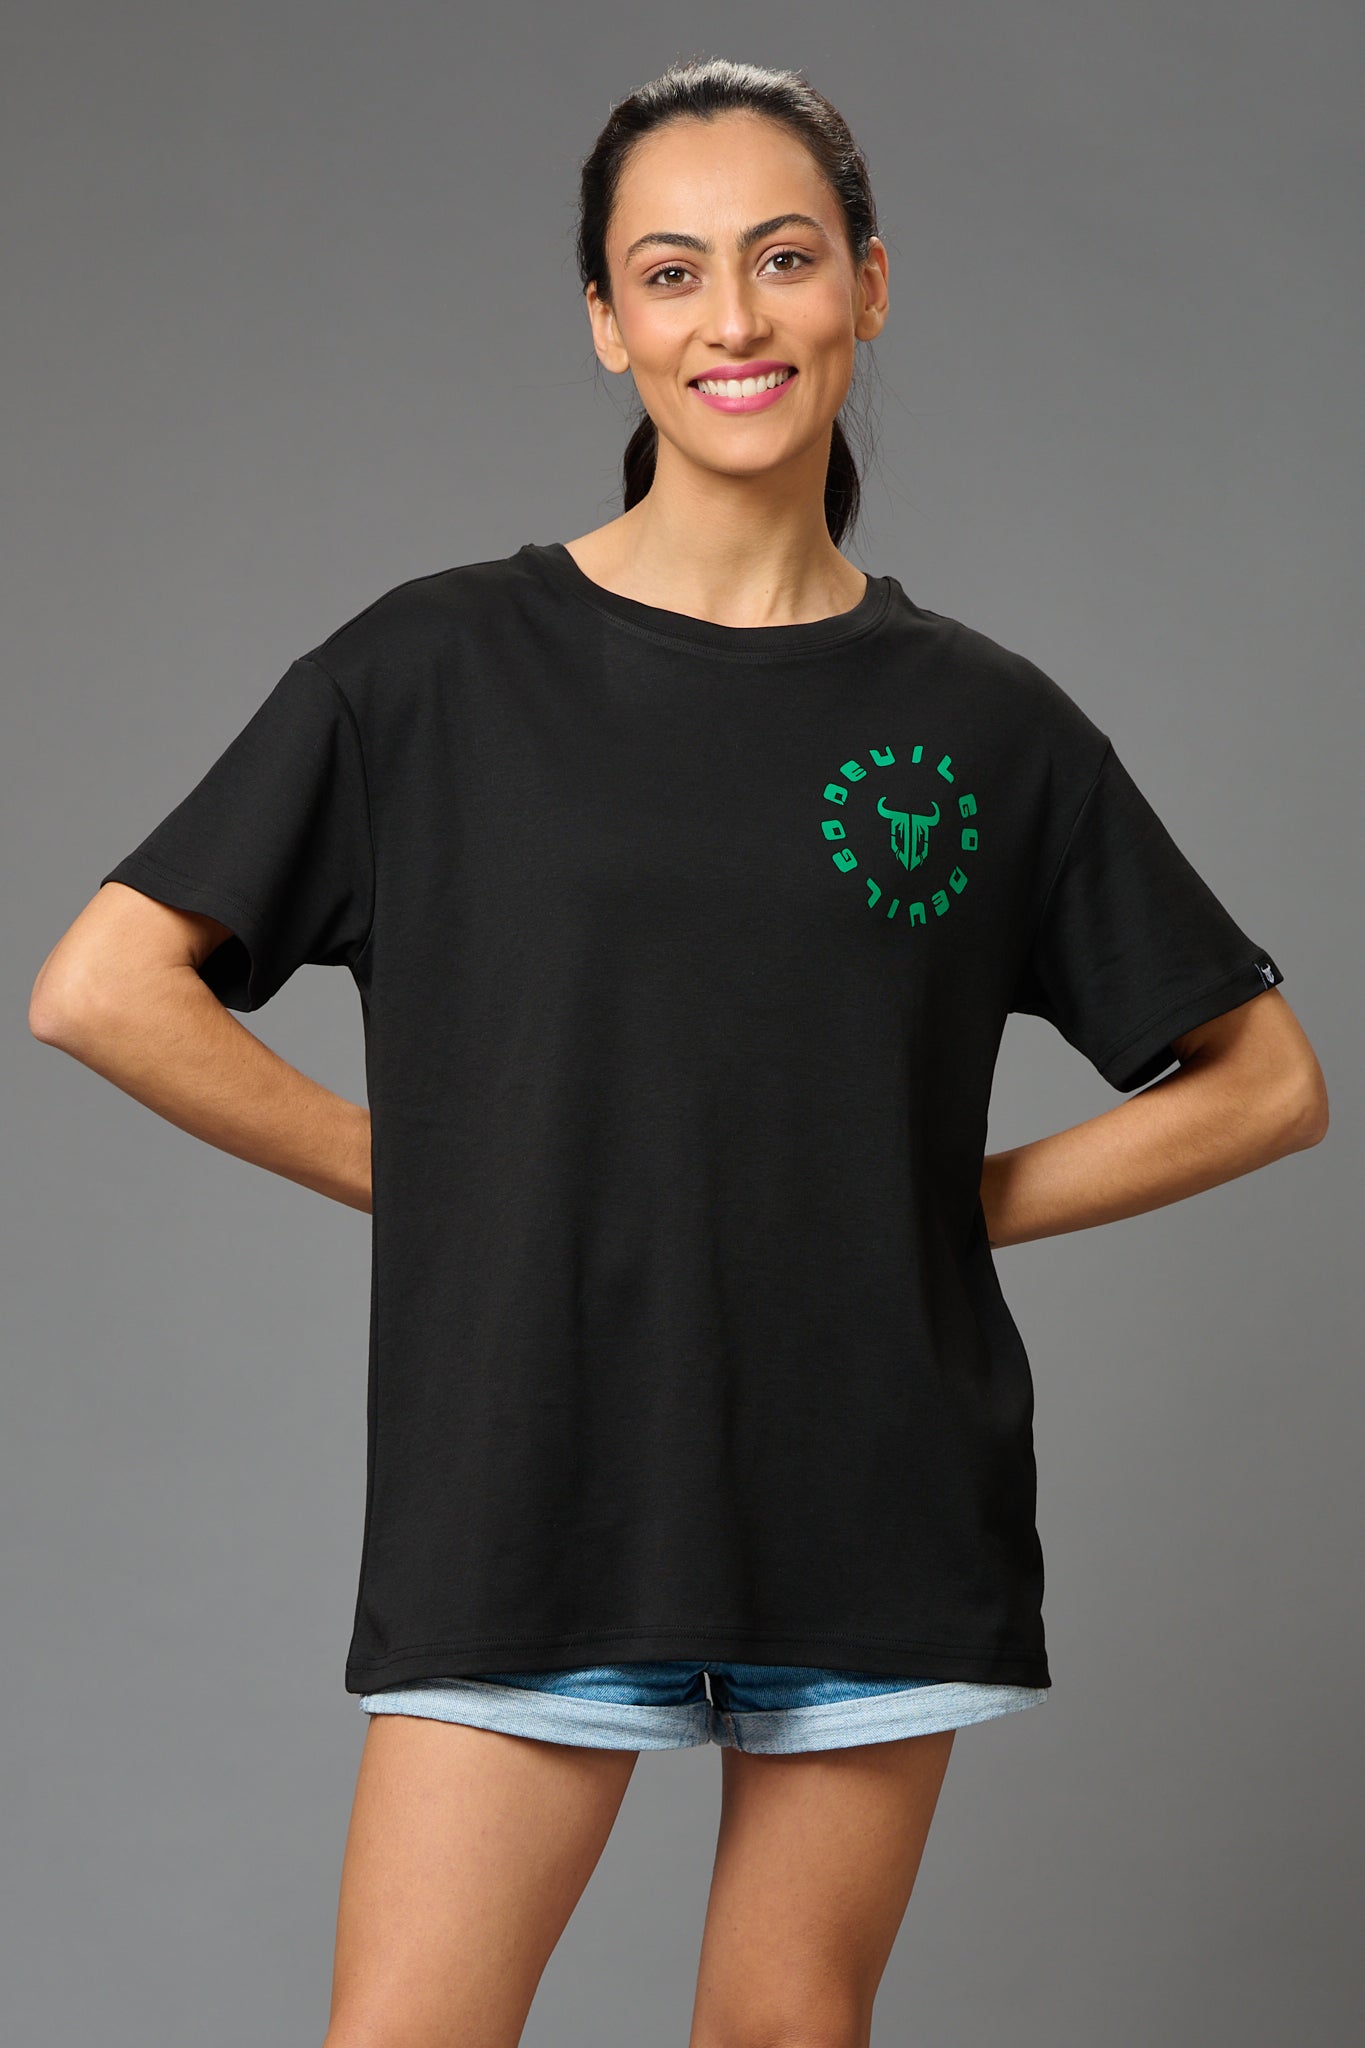 Feel Your Feelings Printed Black Oversized T-Shirt for Women - Go Devil